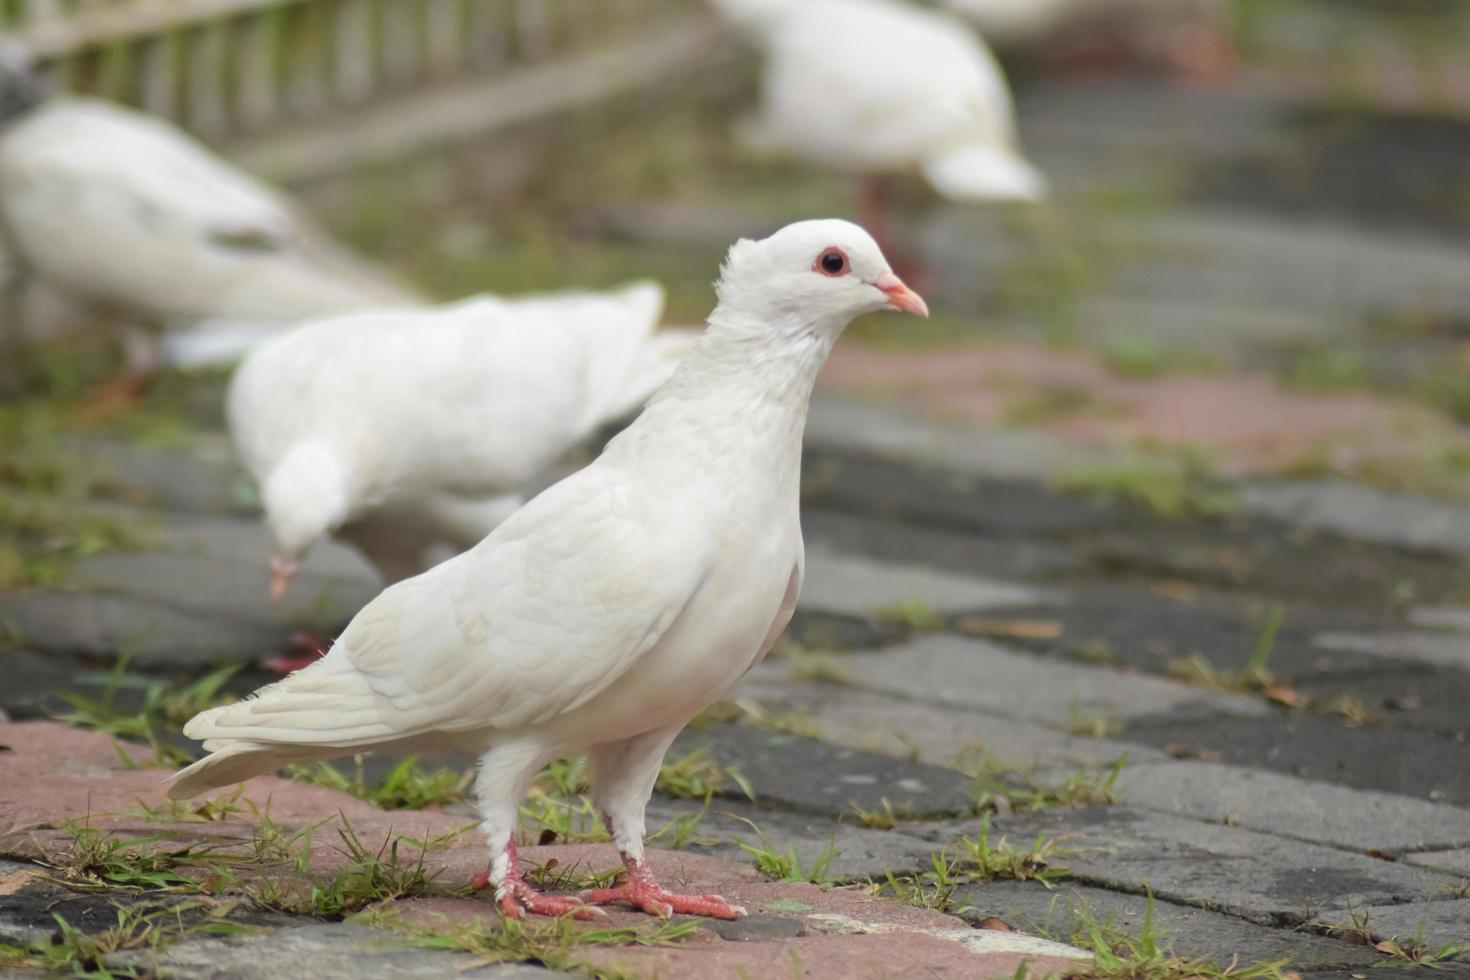 witte duif op straat op zoek naar voedsel, menigtestraten en openbare pleinen, levend van weggegooid voedsel en offergaven van vogelzaad. foto